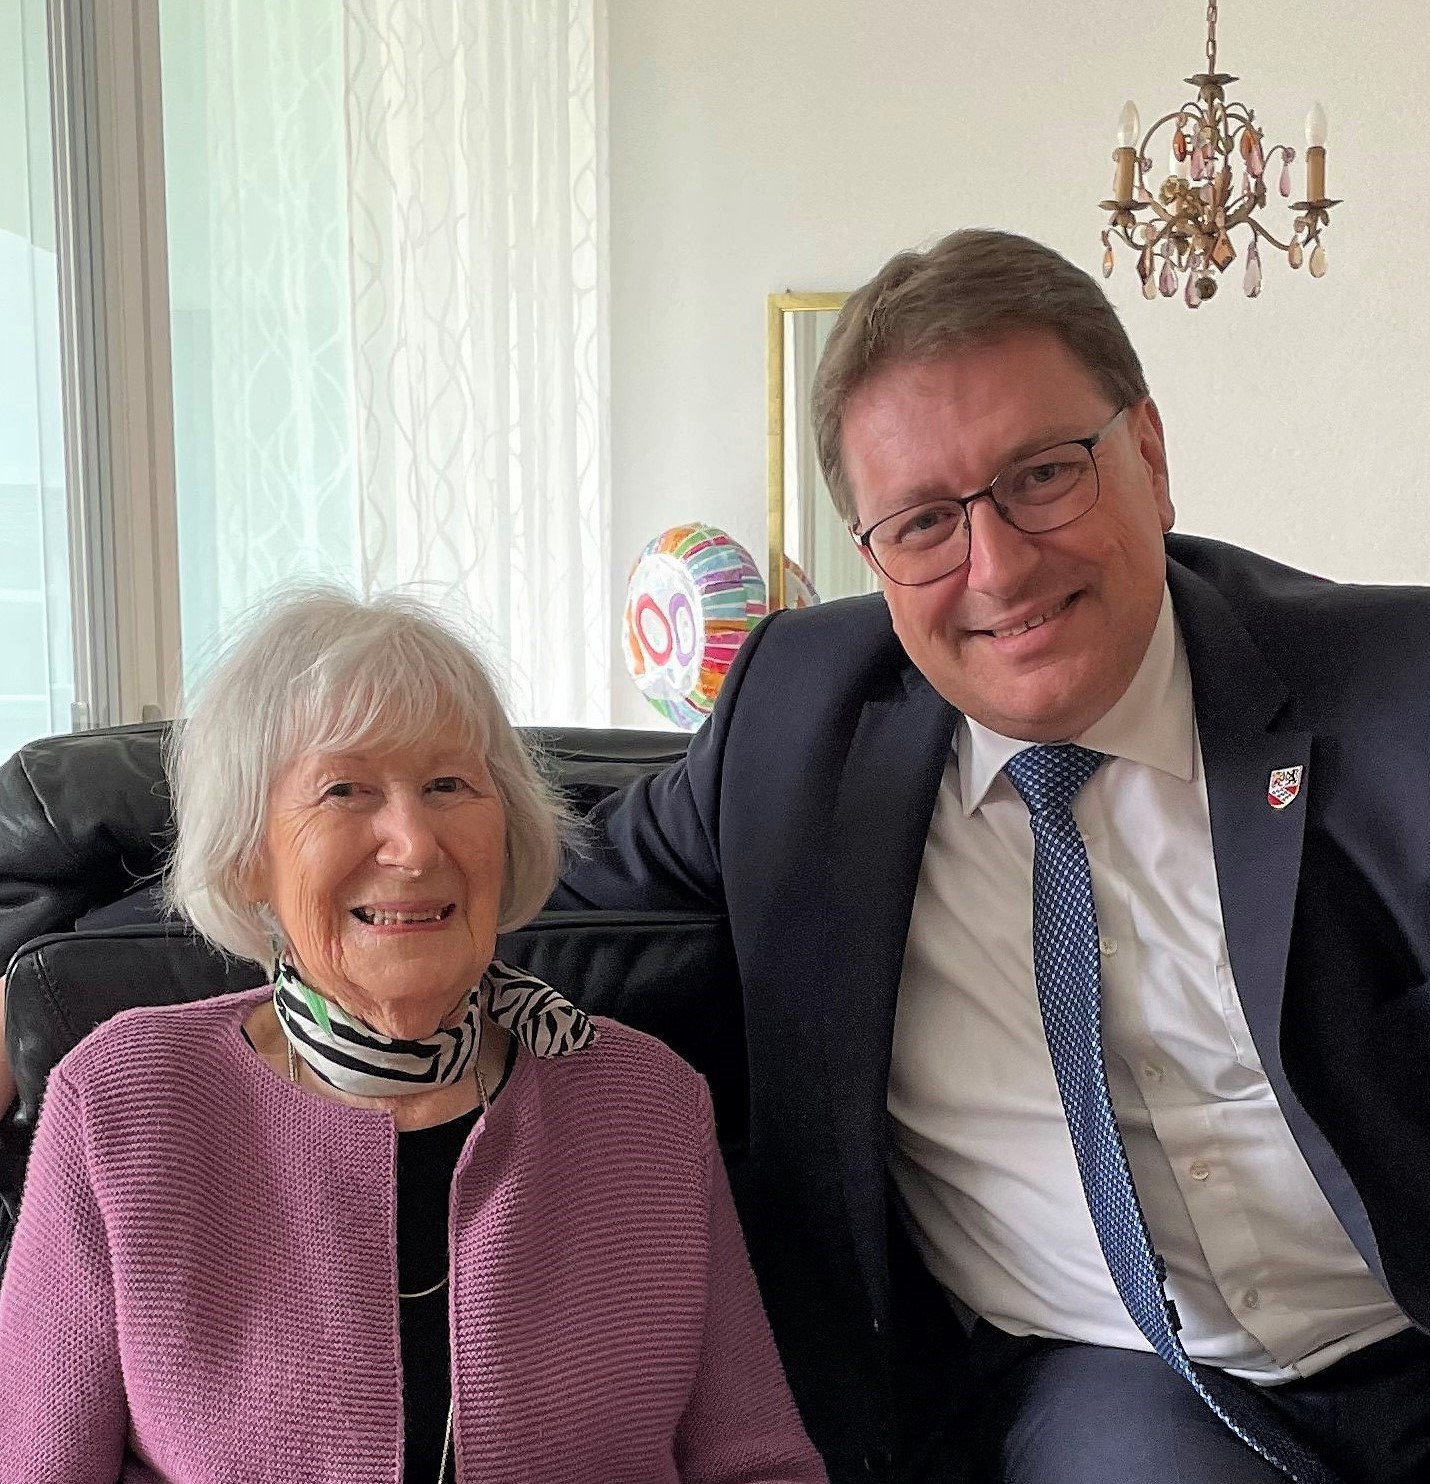 Bei allerbester Gesundheit durfte Frau Klara Fierz am 16. Mai 2023 ihren 100. Geburtstag feiern.

Die Gemeindebehörden gratulieren ganz herzlich zum Geburtstag!